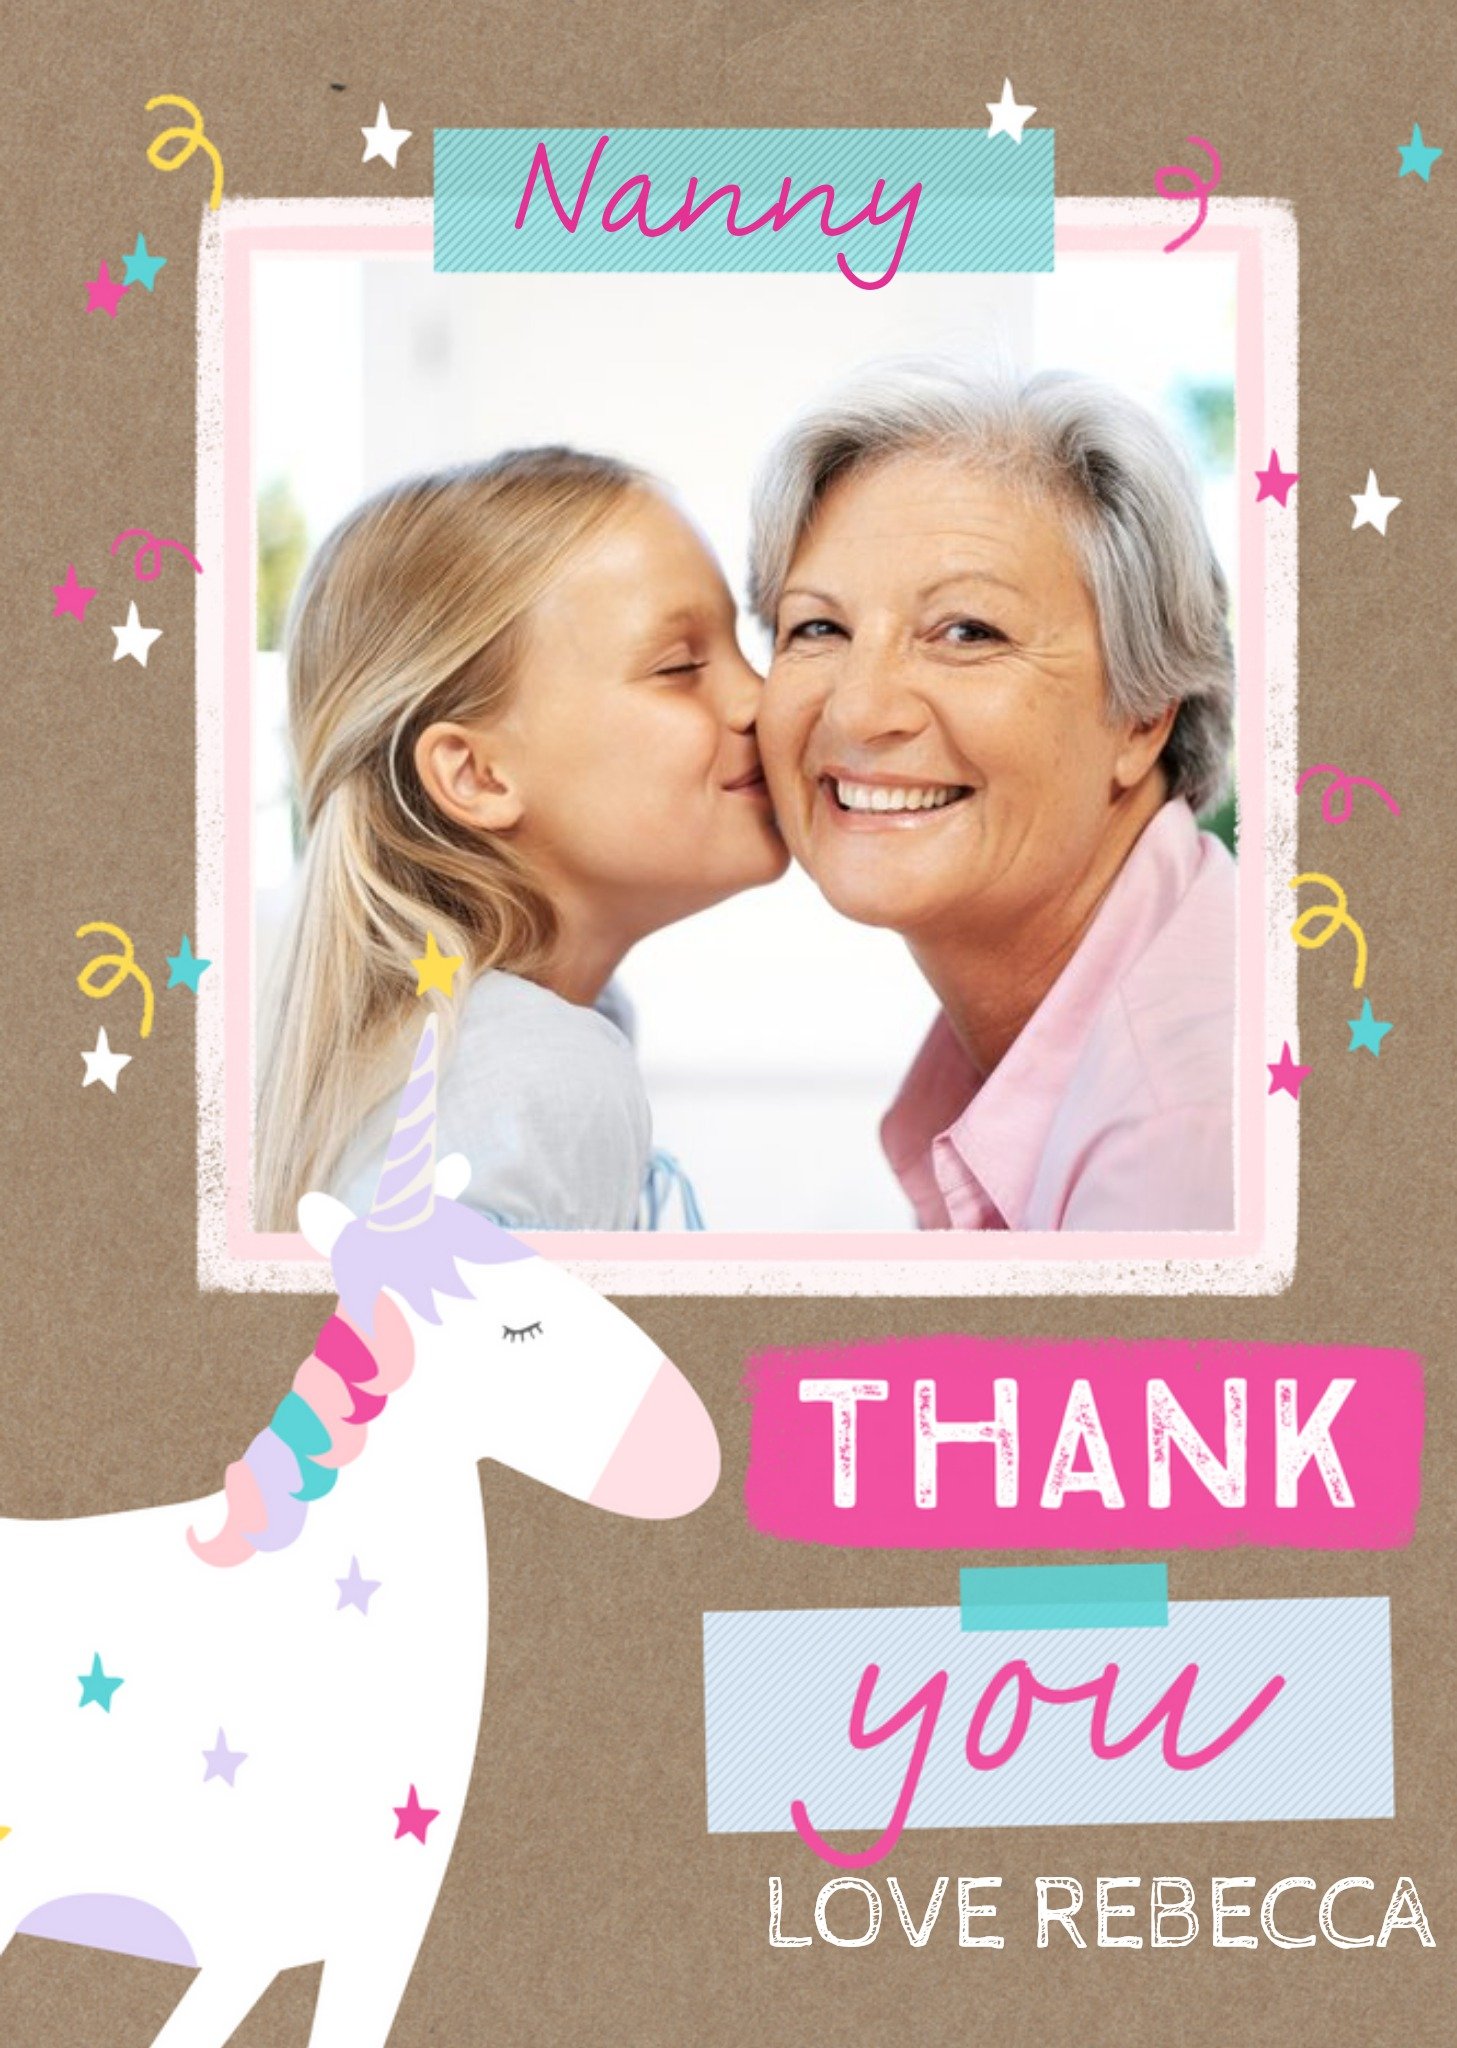 Moonpig Thank You Card - Nanny - Unicorn Photo Upload, Large